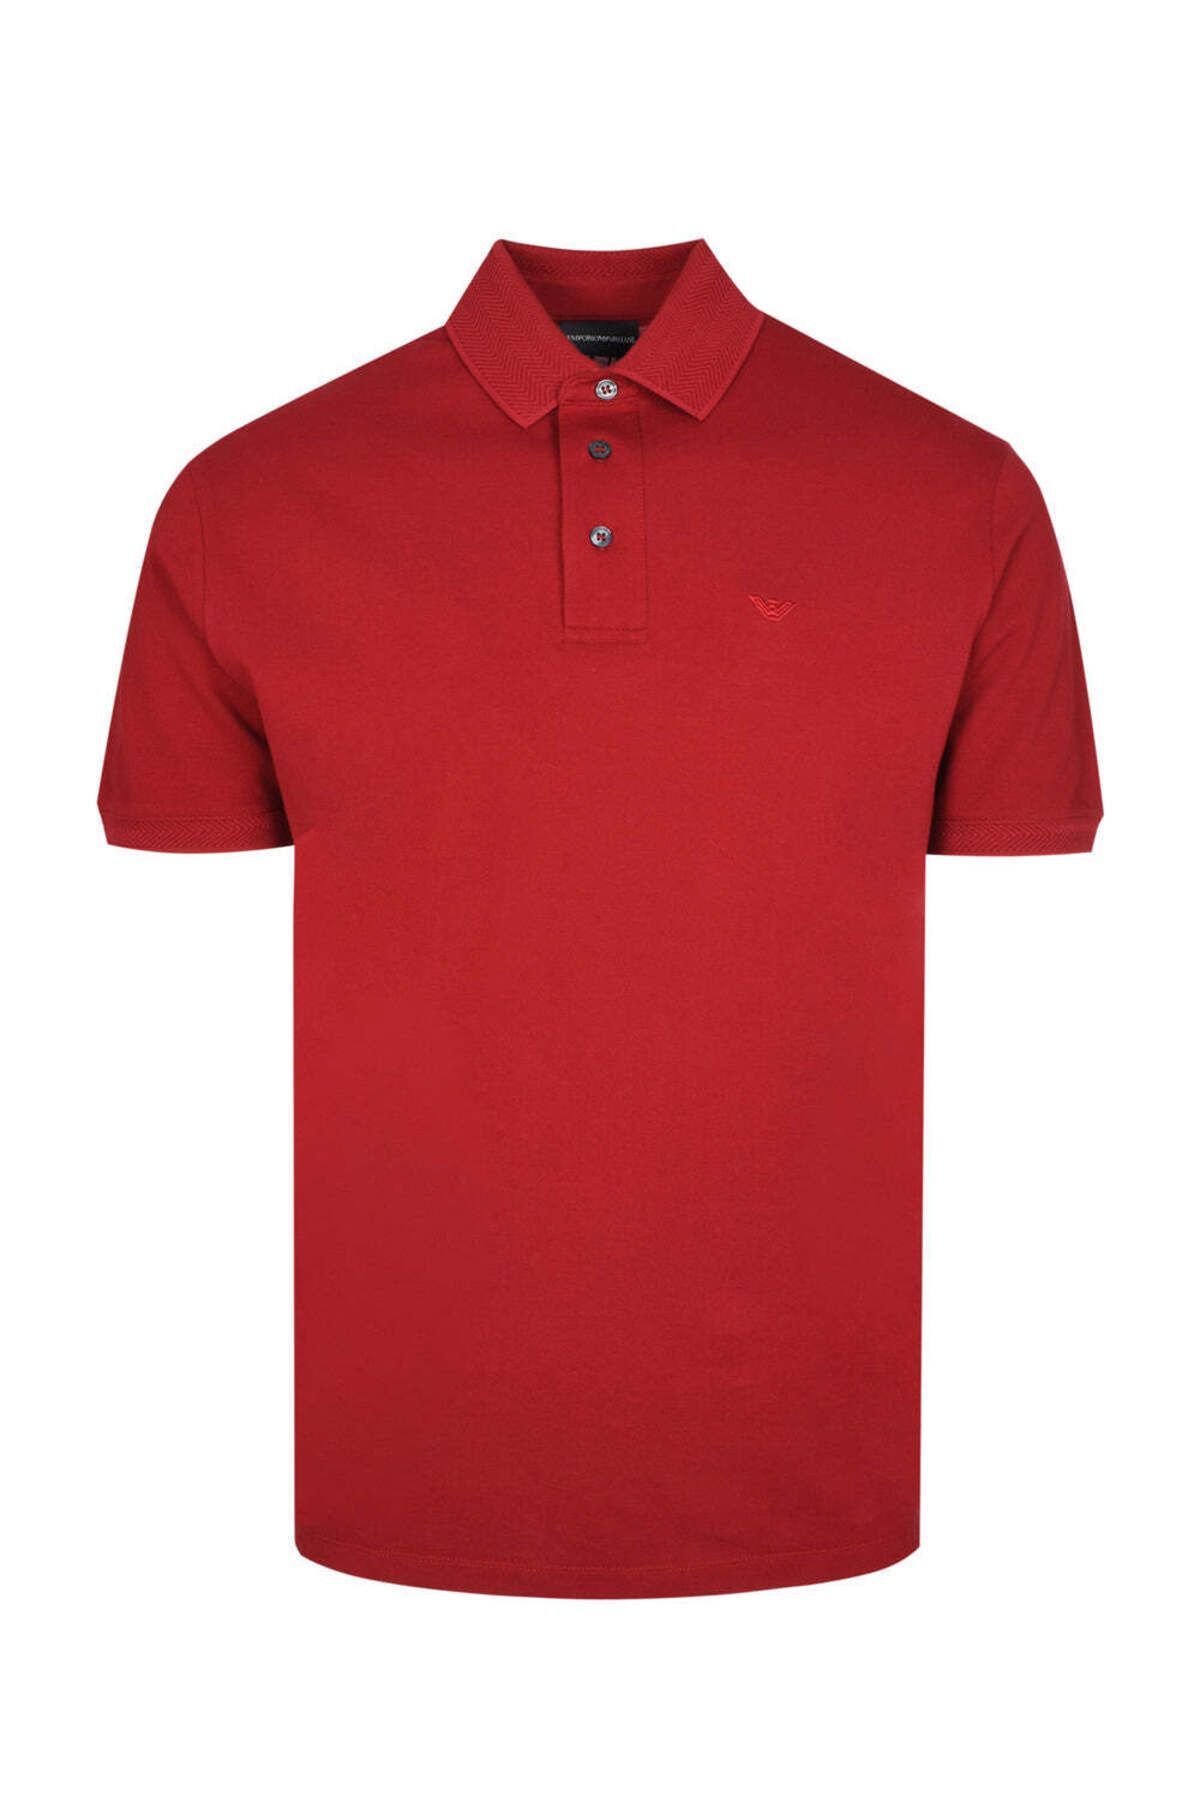 Emporio Armani Erkek Dokuma Kumaş Marka Logolu Kırmızı Polo Yaka T-Shirt 3D1FF2 1JTKZ-03B7